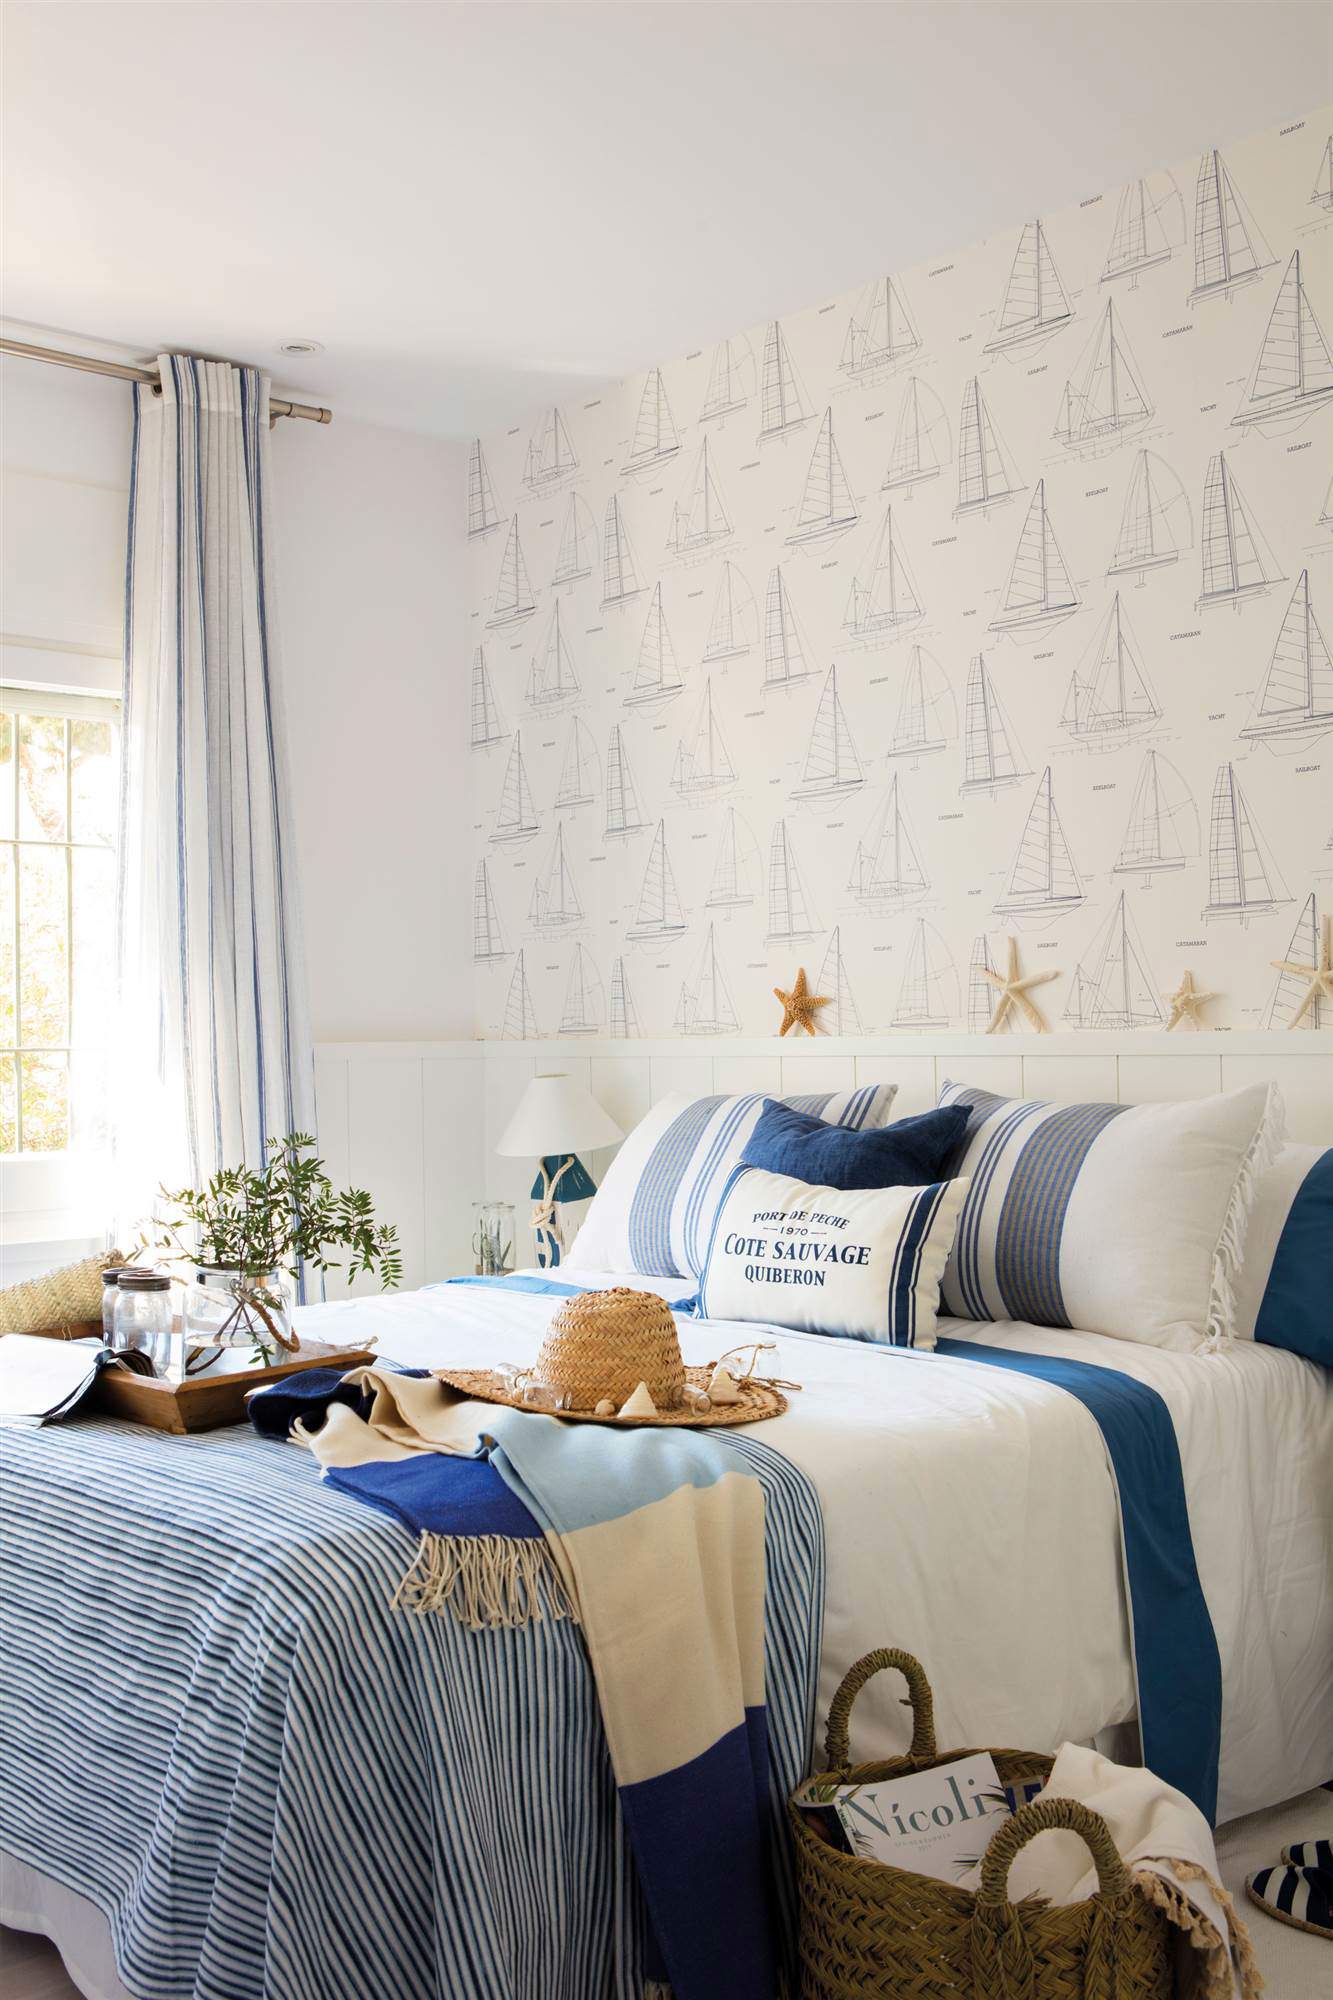 Dormitorio con ropa de cama azul y papel pintado de barquitos